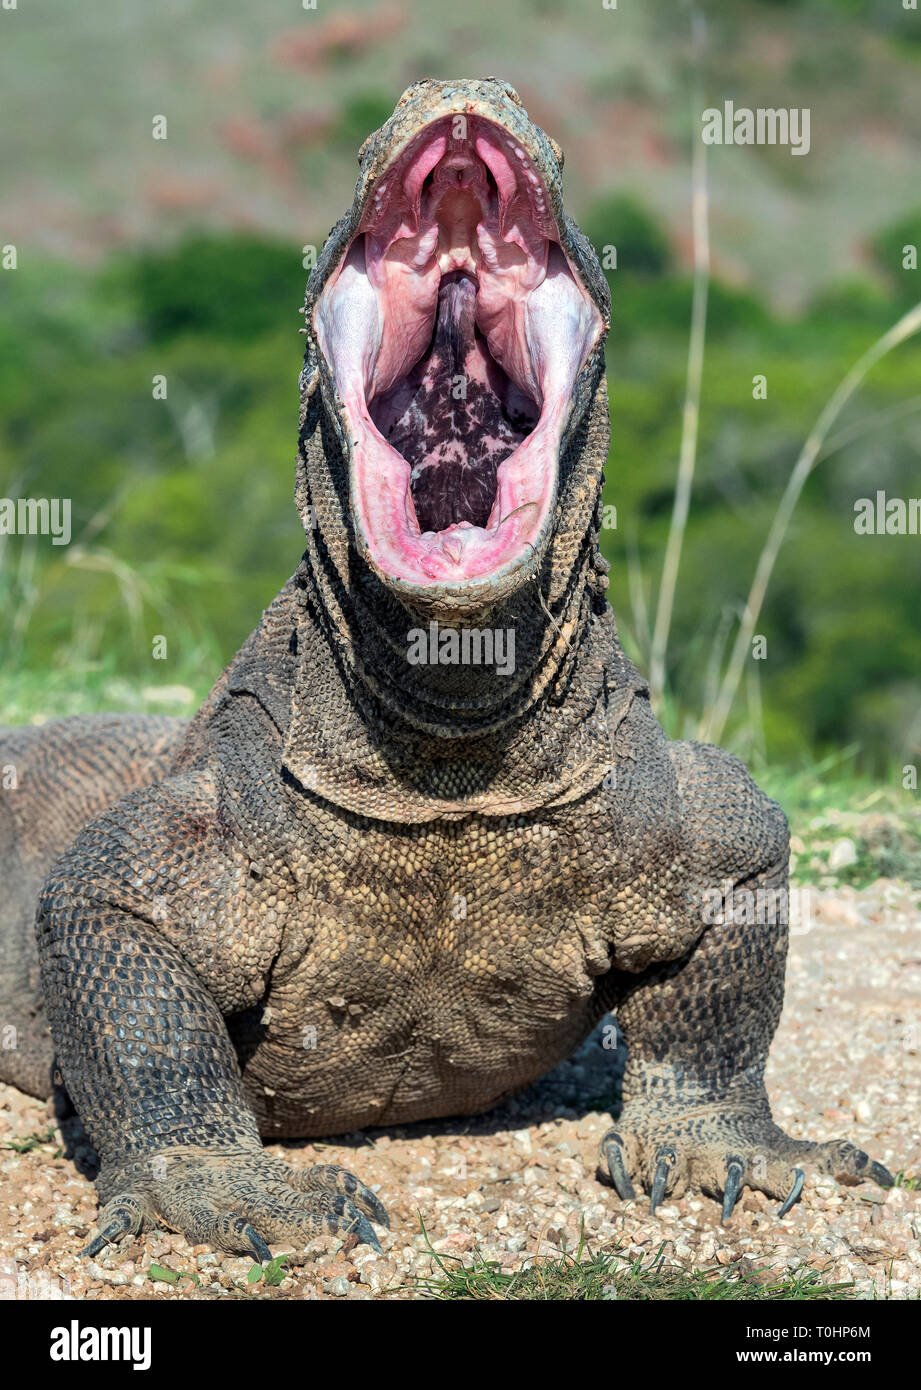 La bouche ouverte de le dragon de Komodo. Close up portrait, vue de face. Dragon de Komodo. Nom scientifique : Varanus komodoensis. L'habitat naturel. L'Indonésie. Banque D'Images